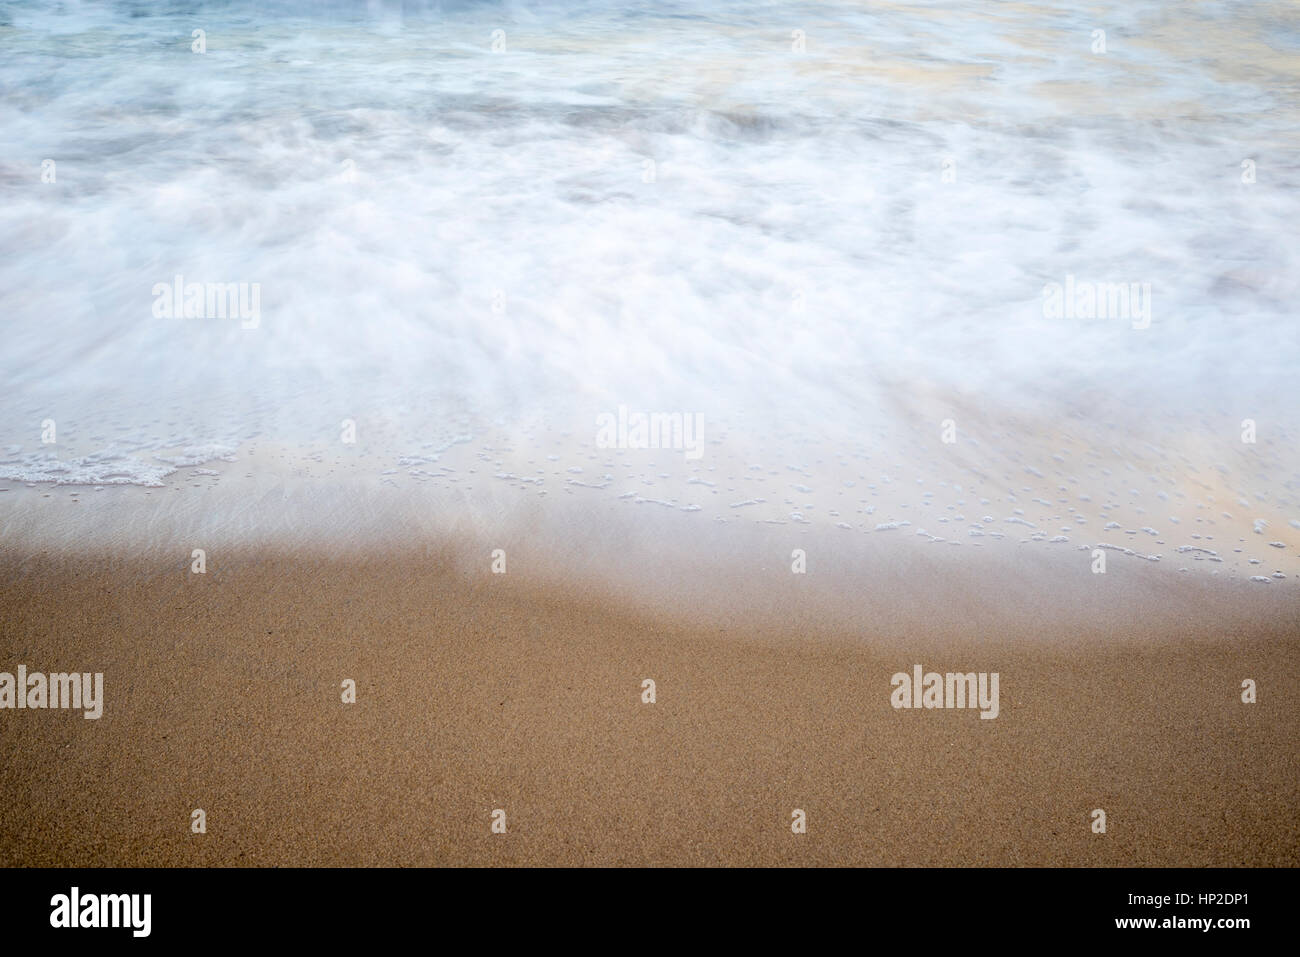 Nahaufnahme von Strand, Sand und Wellen. Langzeitbelichtung Bild. Stockfoto